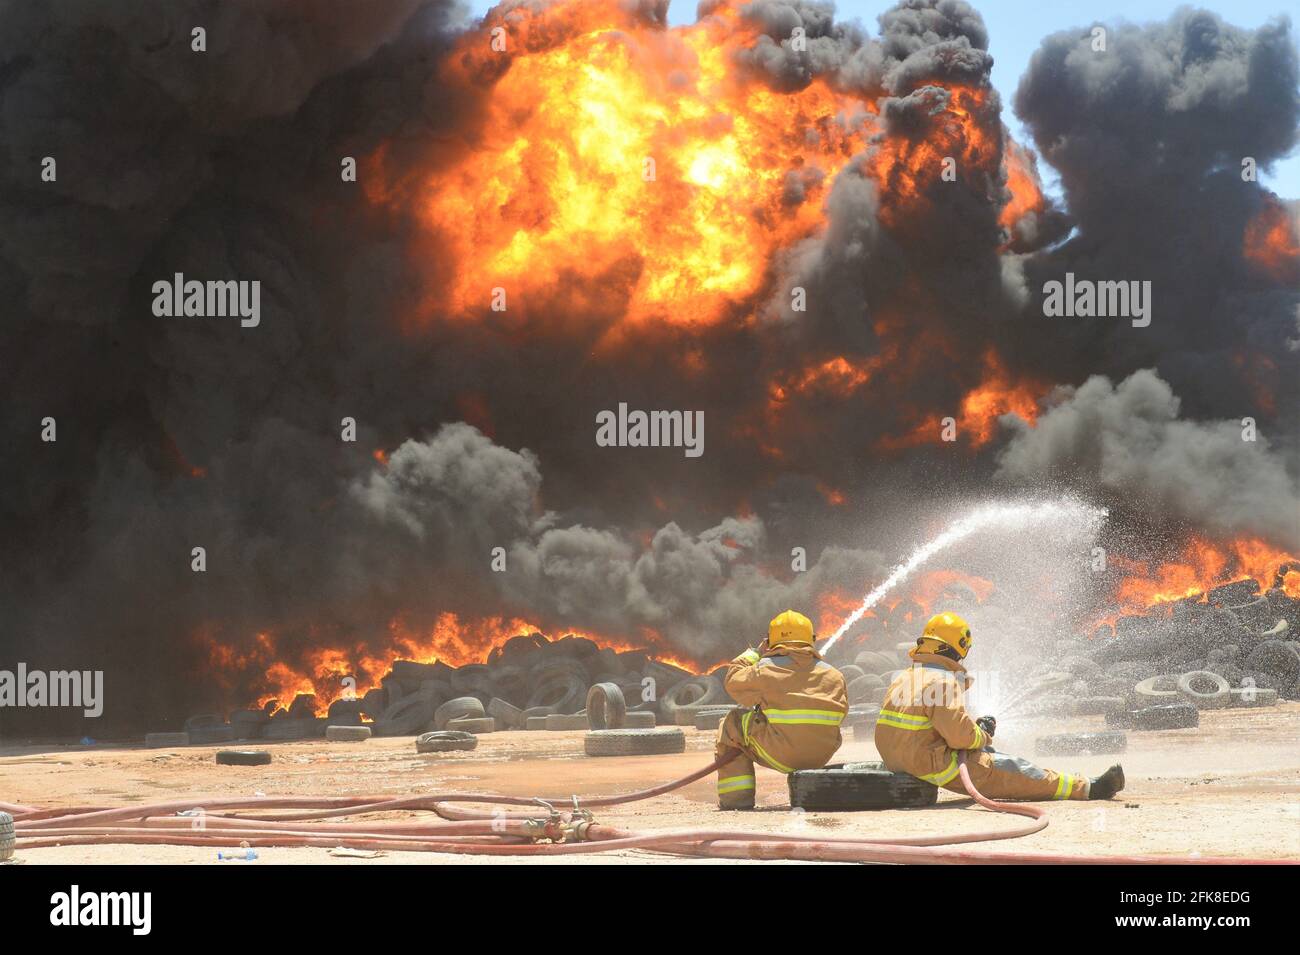 Jahra, Kuwait. April 2021. Feuerwehrleute versuchen, den Brand auf einem Reifenhof in Jahra Governorate, Kuwait, 29. April 2021 zu kontrollieren. Am Donnerstag brach auf dem Reifenhof ein Feuer aus, es wurden keine Verletzten gemeldet. Quelle: Asad/Xinhua/Alamy Live News Stockfoto